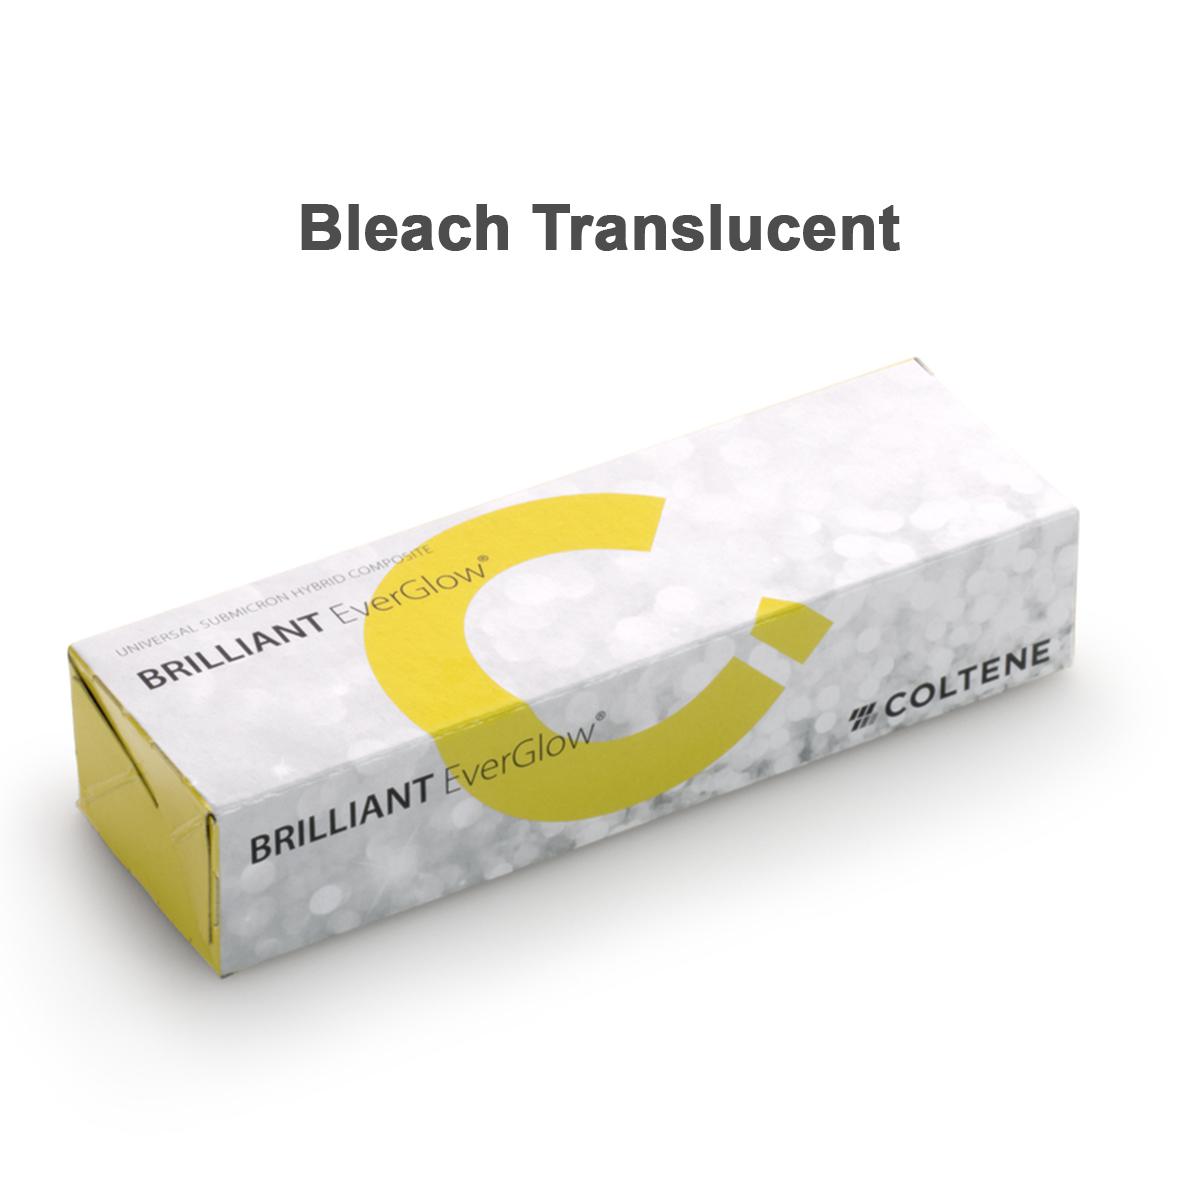 کامپوزیت ساب میکرون هیبرید BRILLIANT EverGlow Bleach Translucent (تولیدی)  - Brilliant EverGlow Composite- ACT